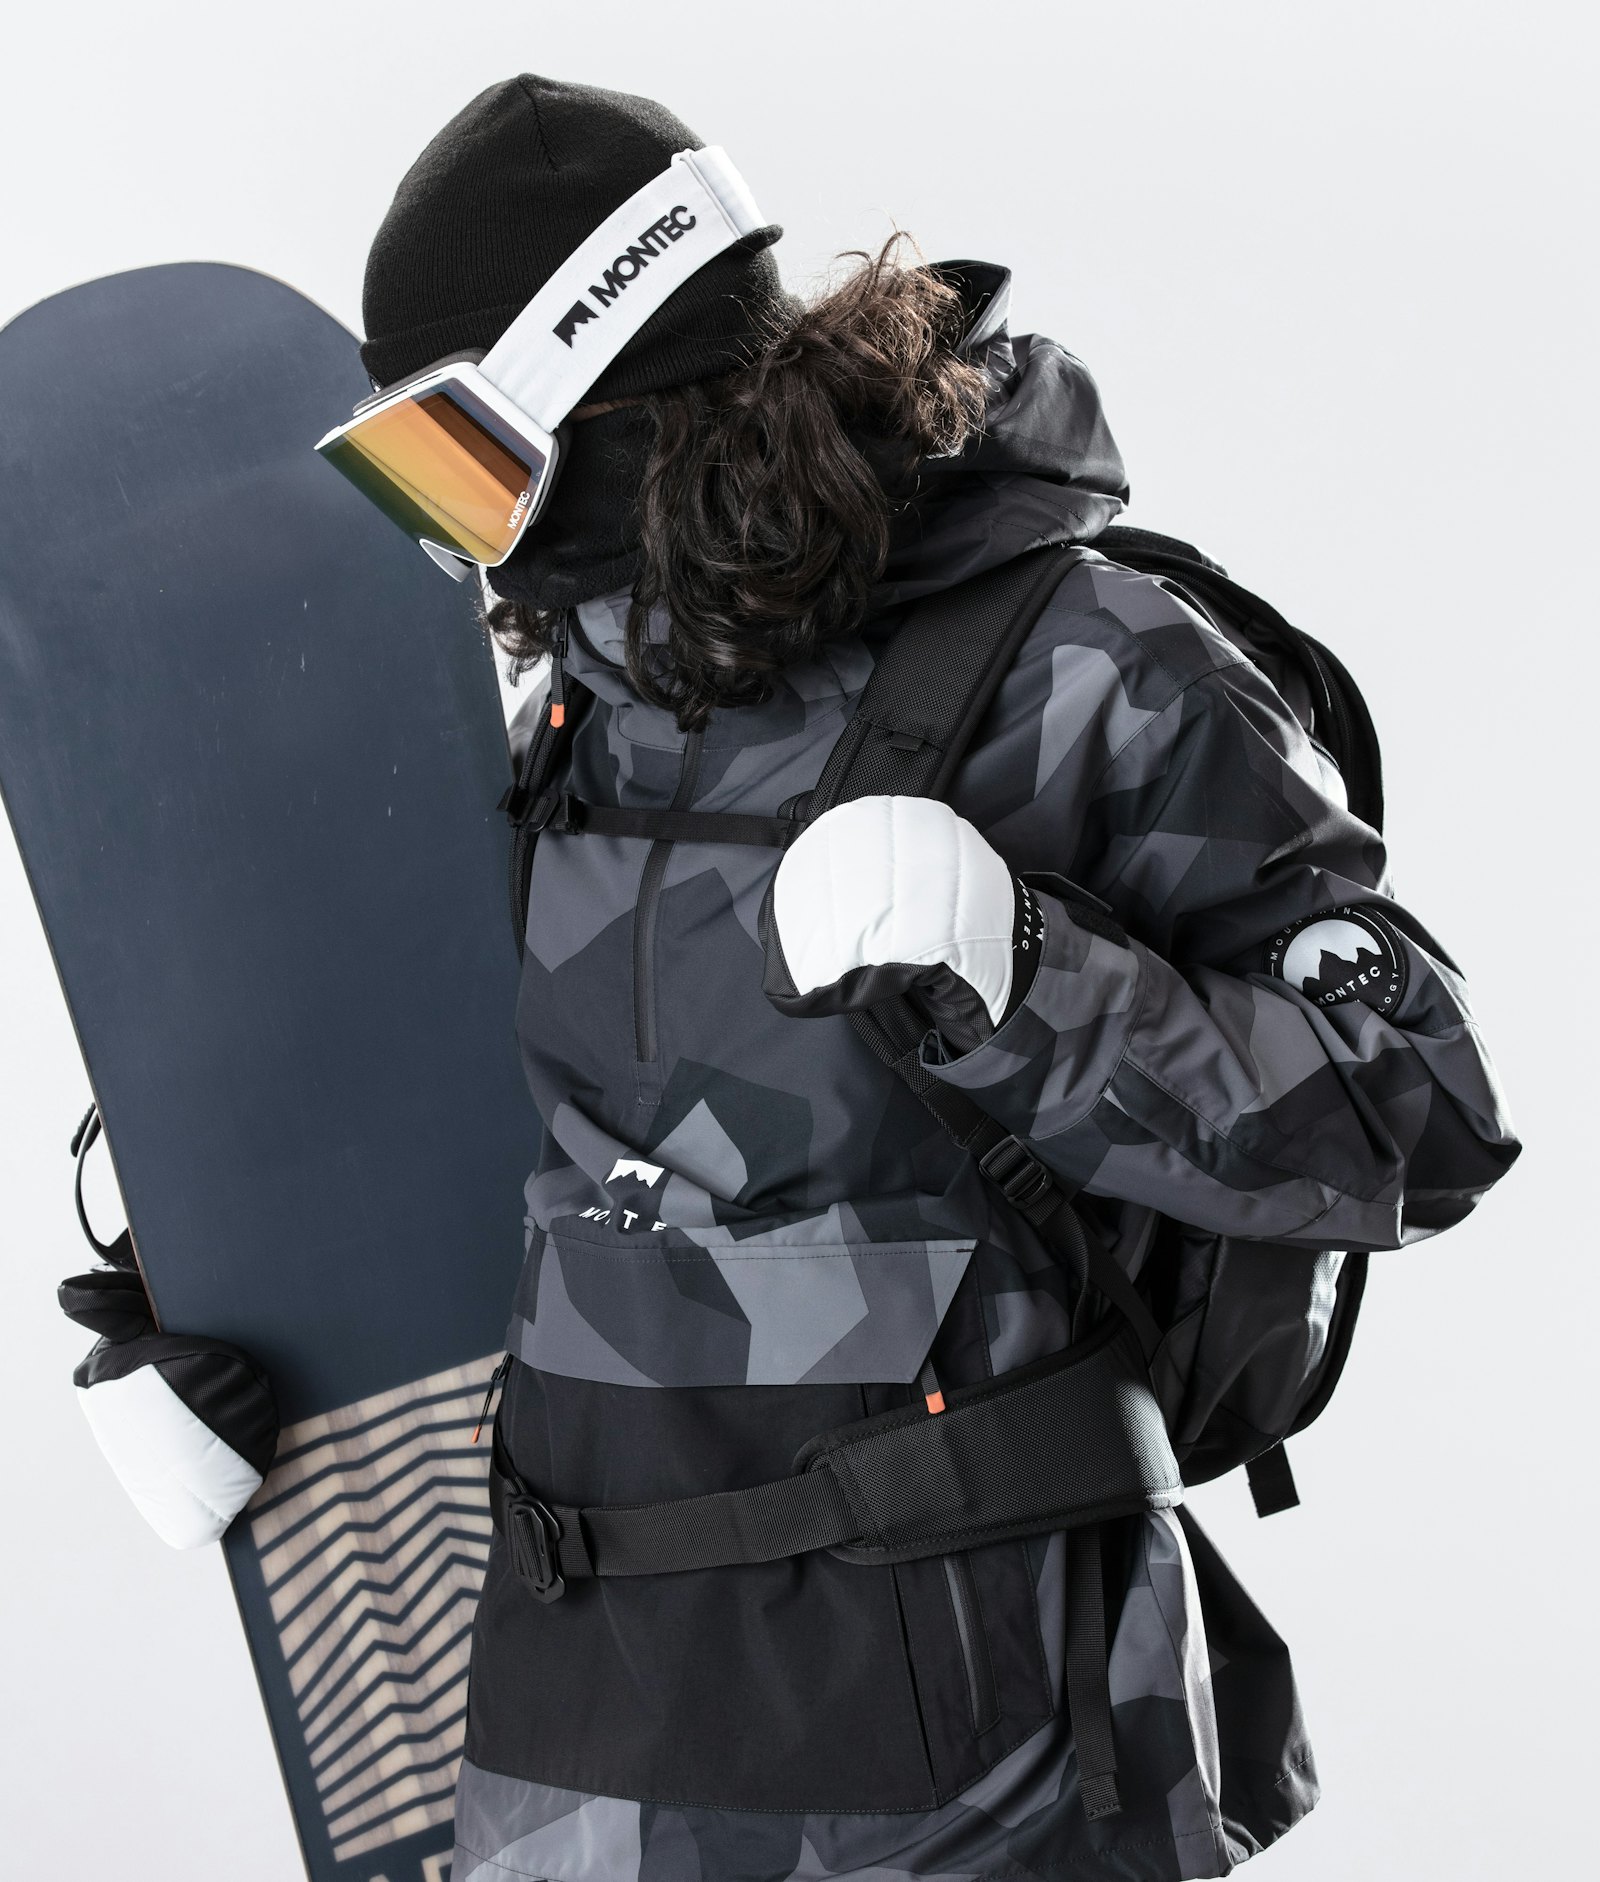 Montec Typhoon 2020 Snowboardjacke Herren Night Camo/Black